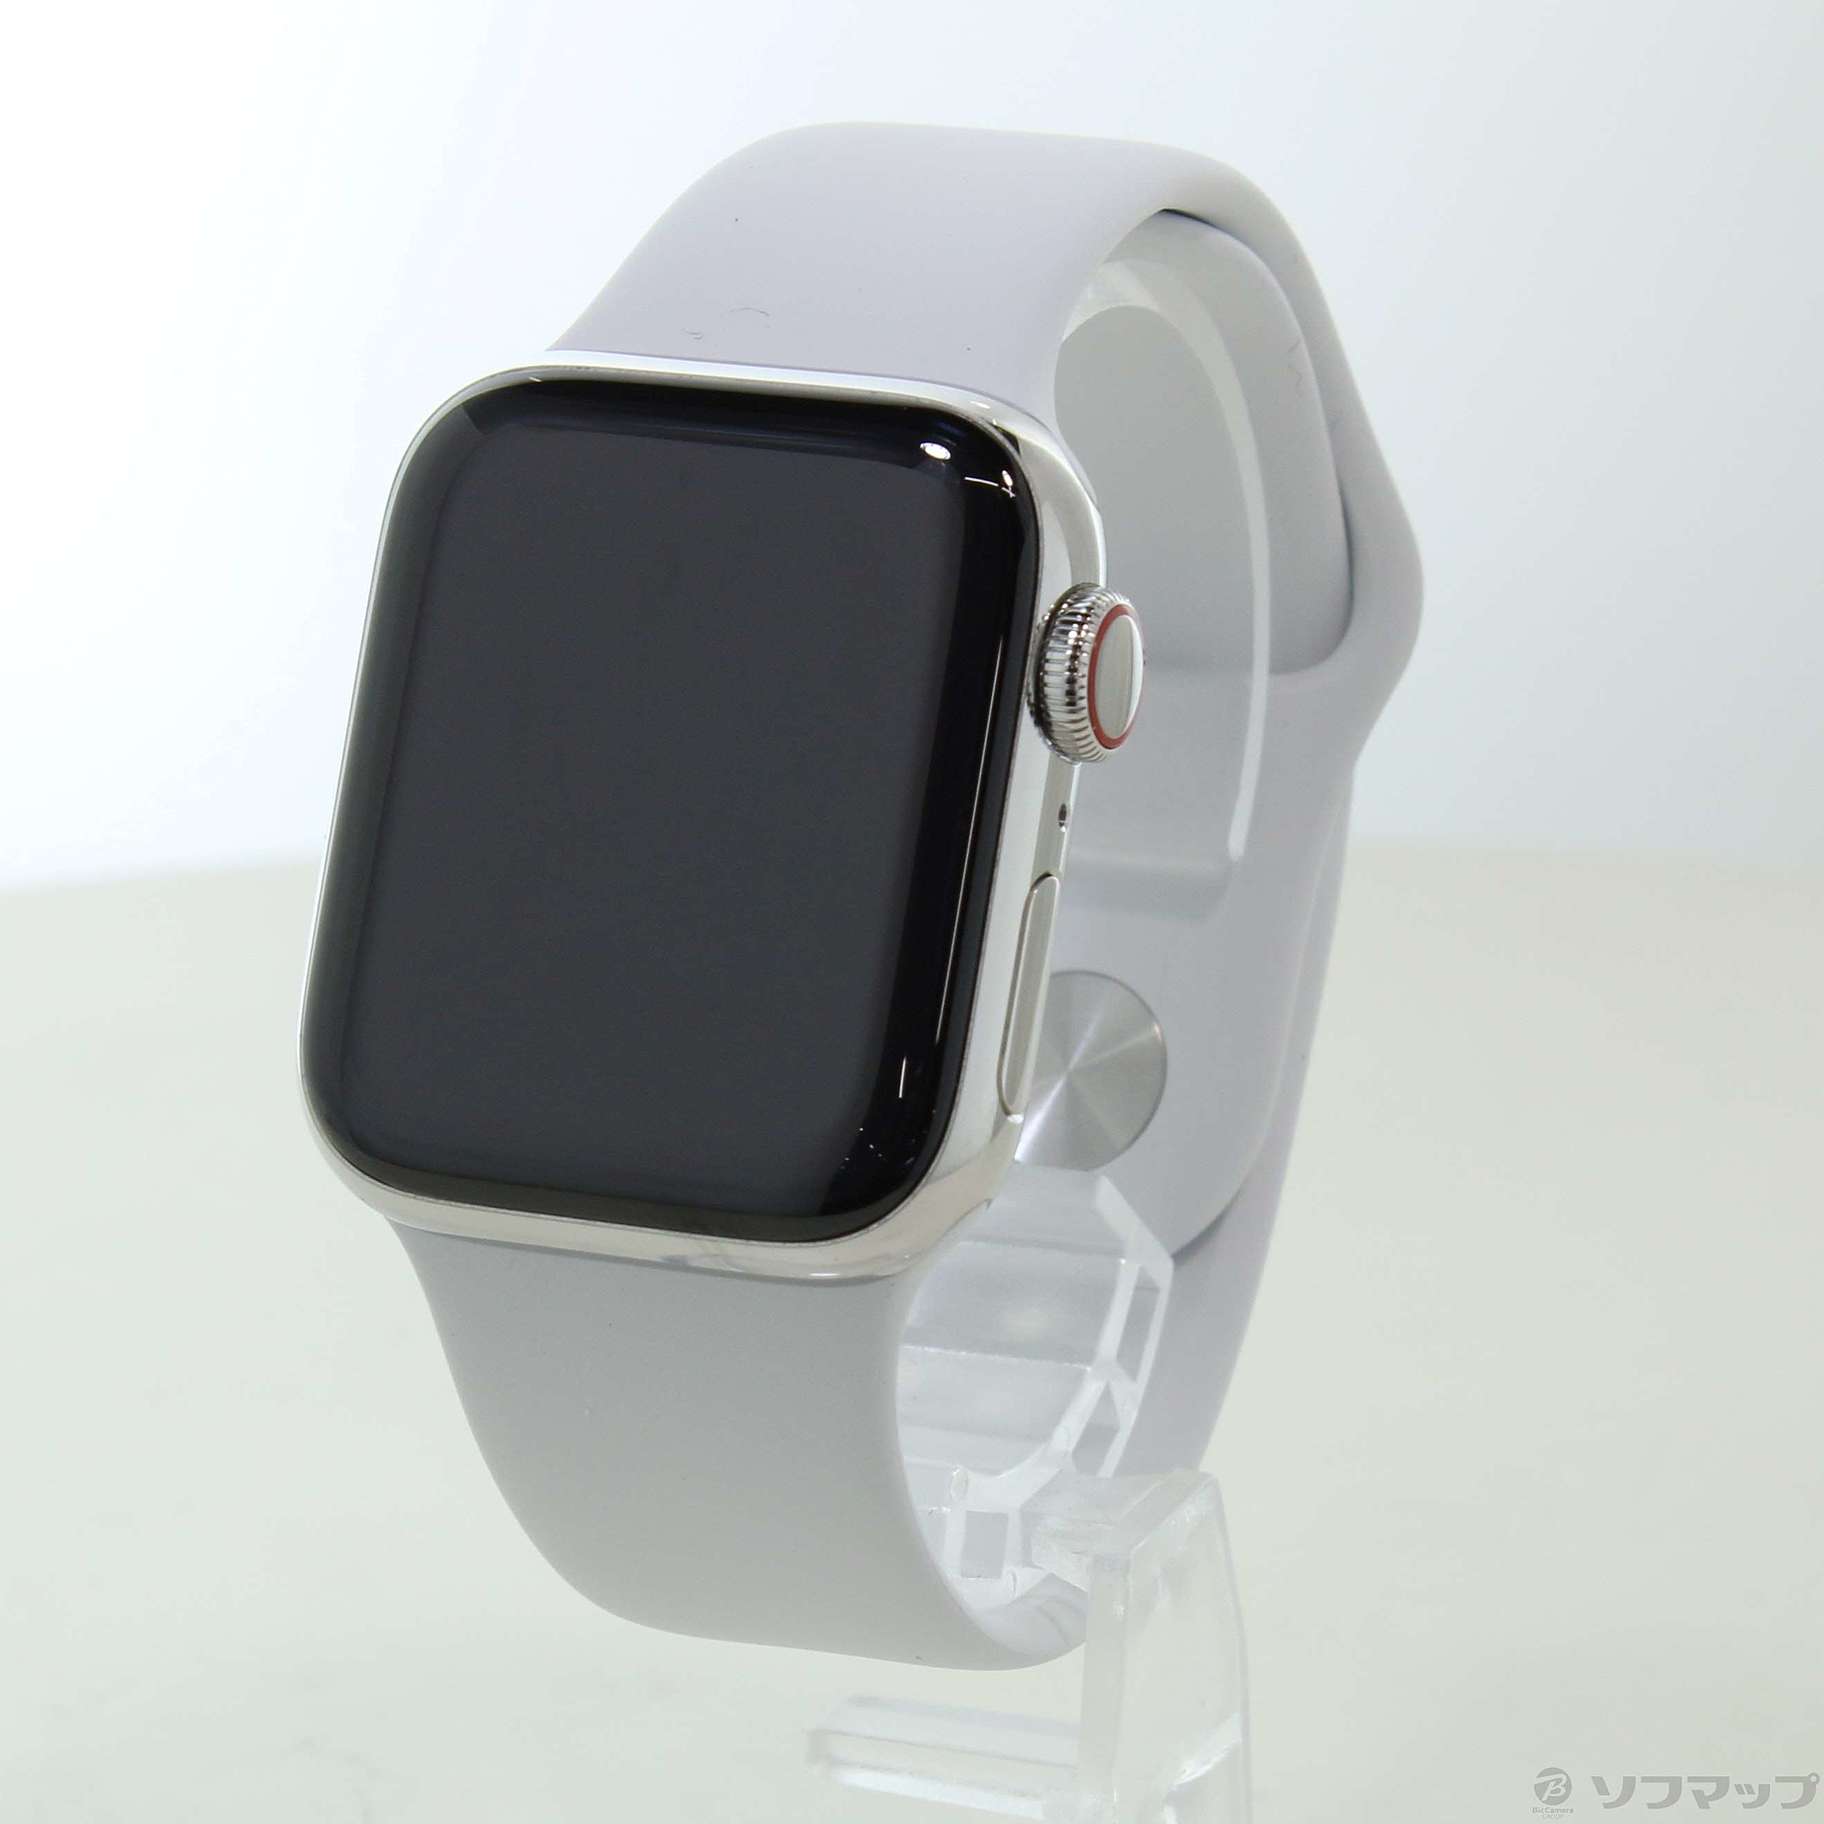 〔展示品〕 Apple Watch Series 4 GPS + Cellular 40mm ステンレススチールケース ホワイトスポーツバンド